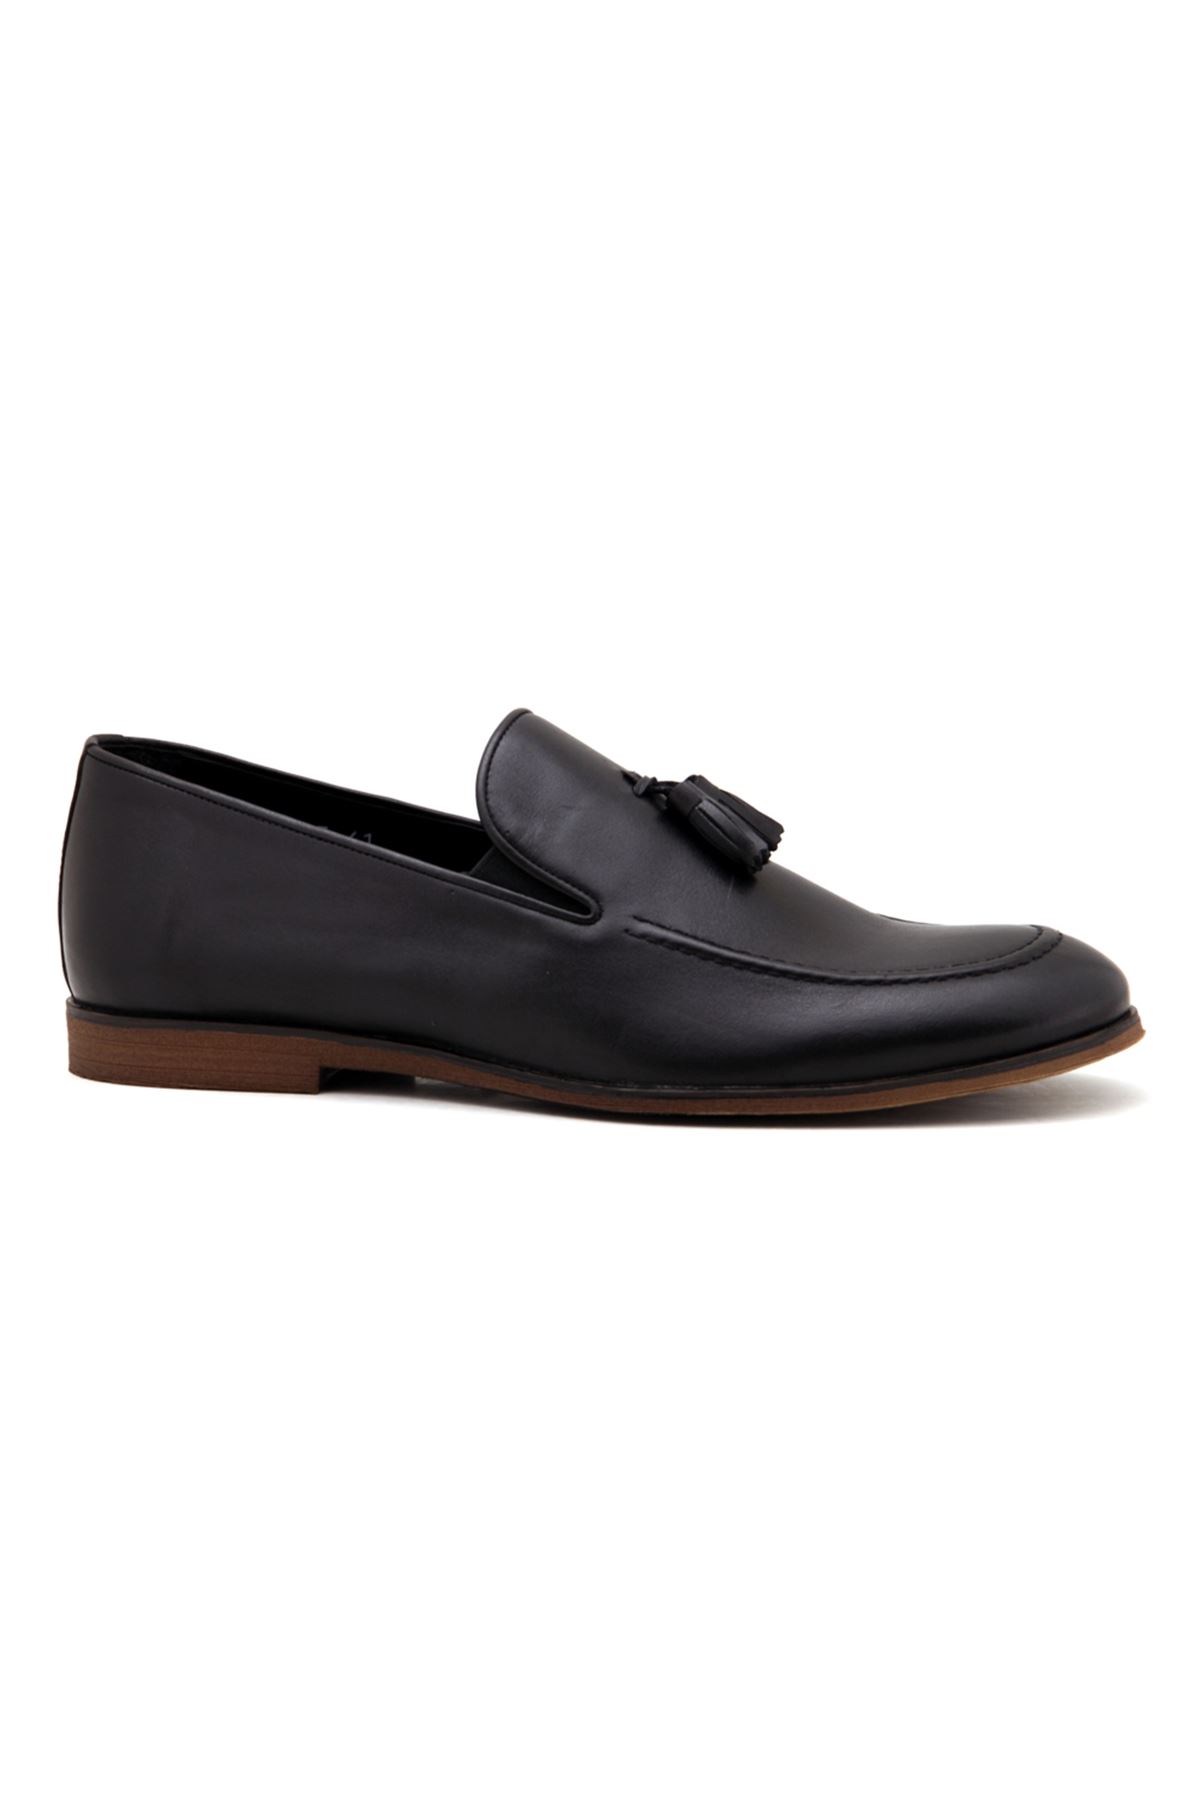 165 Libero Klasik Erkek Ayakkabı - Siyah